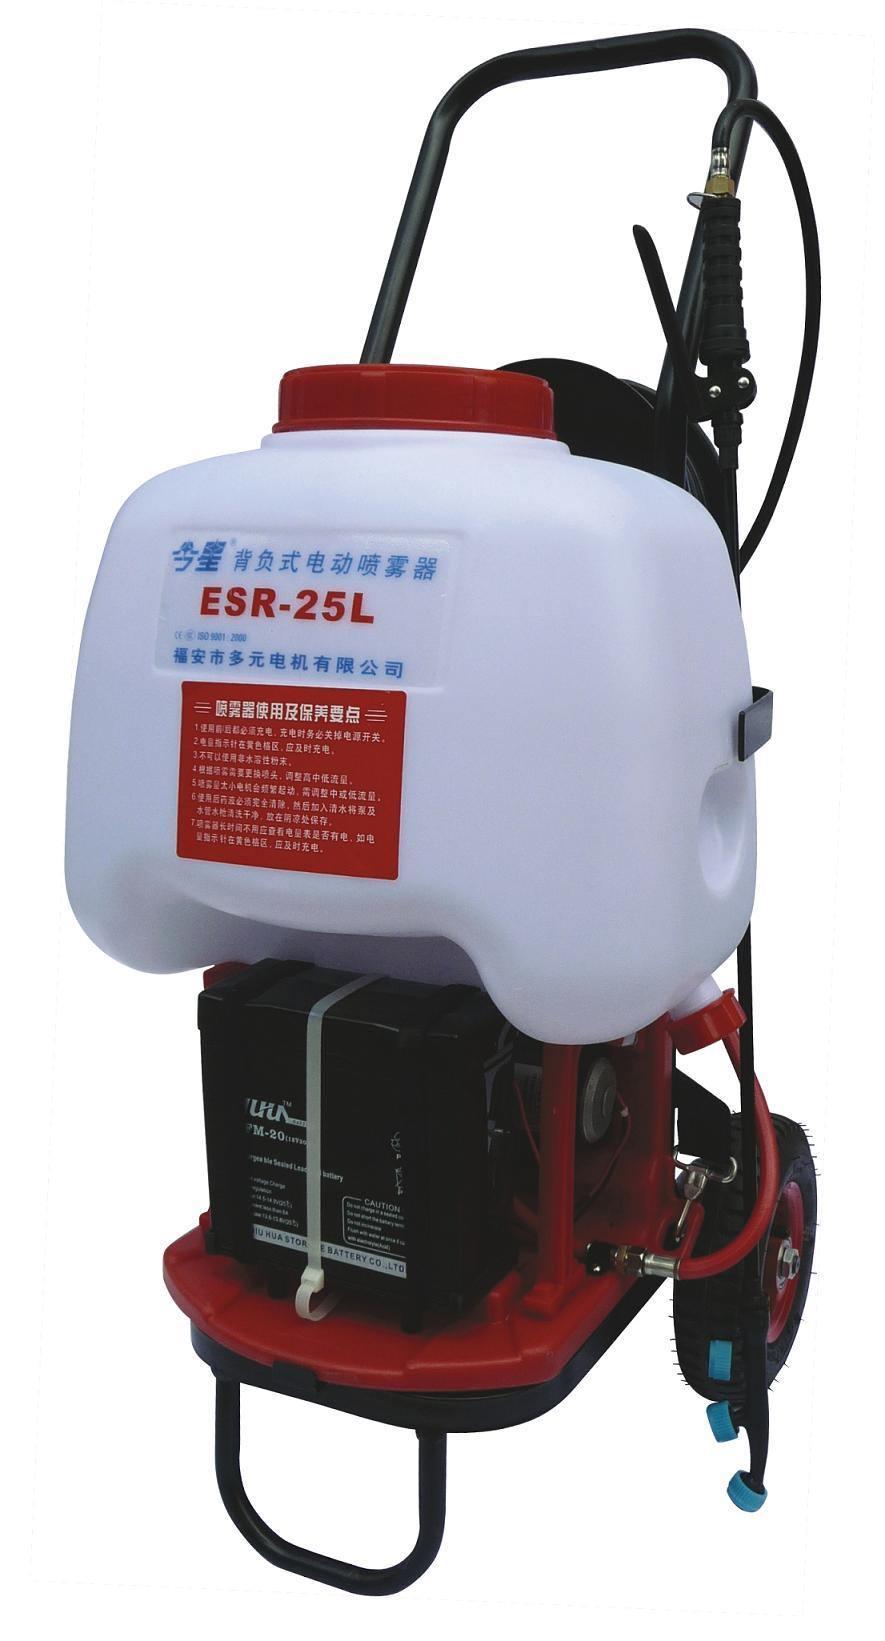 Rechargeable Electric Sprayer (ESR-25L)